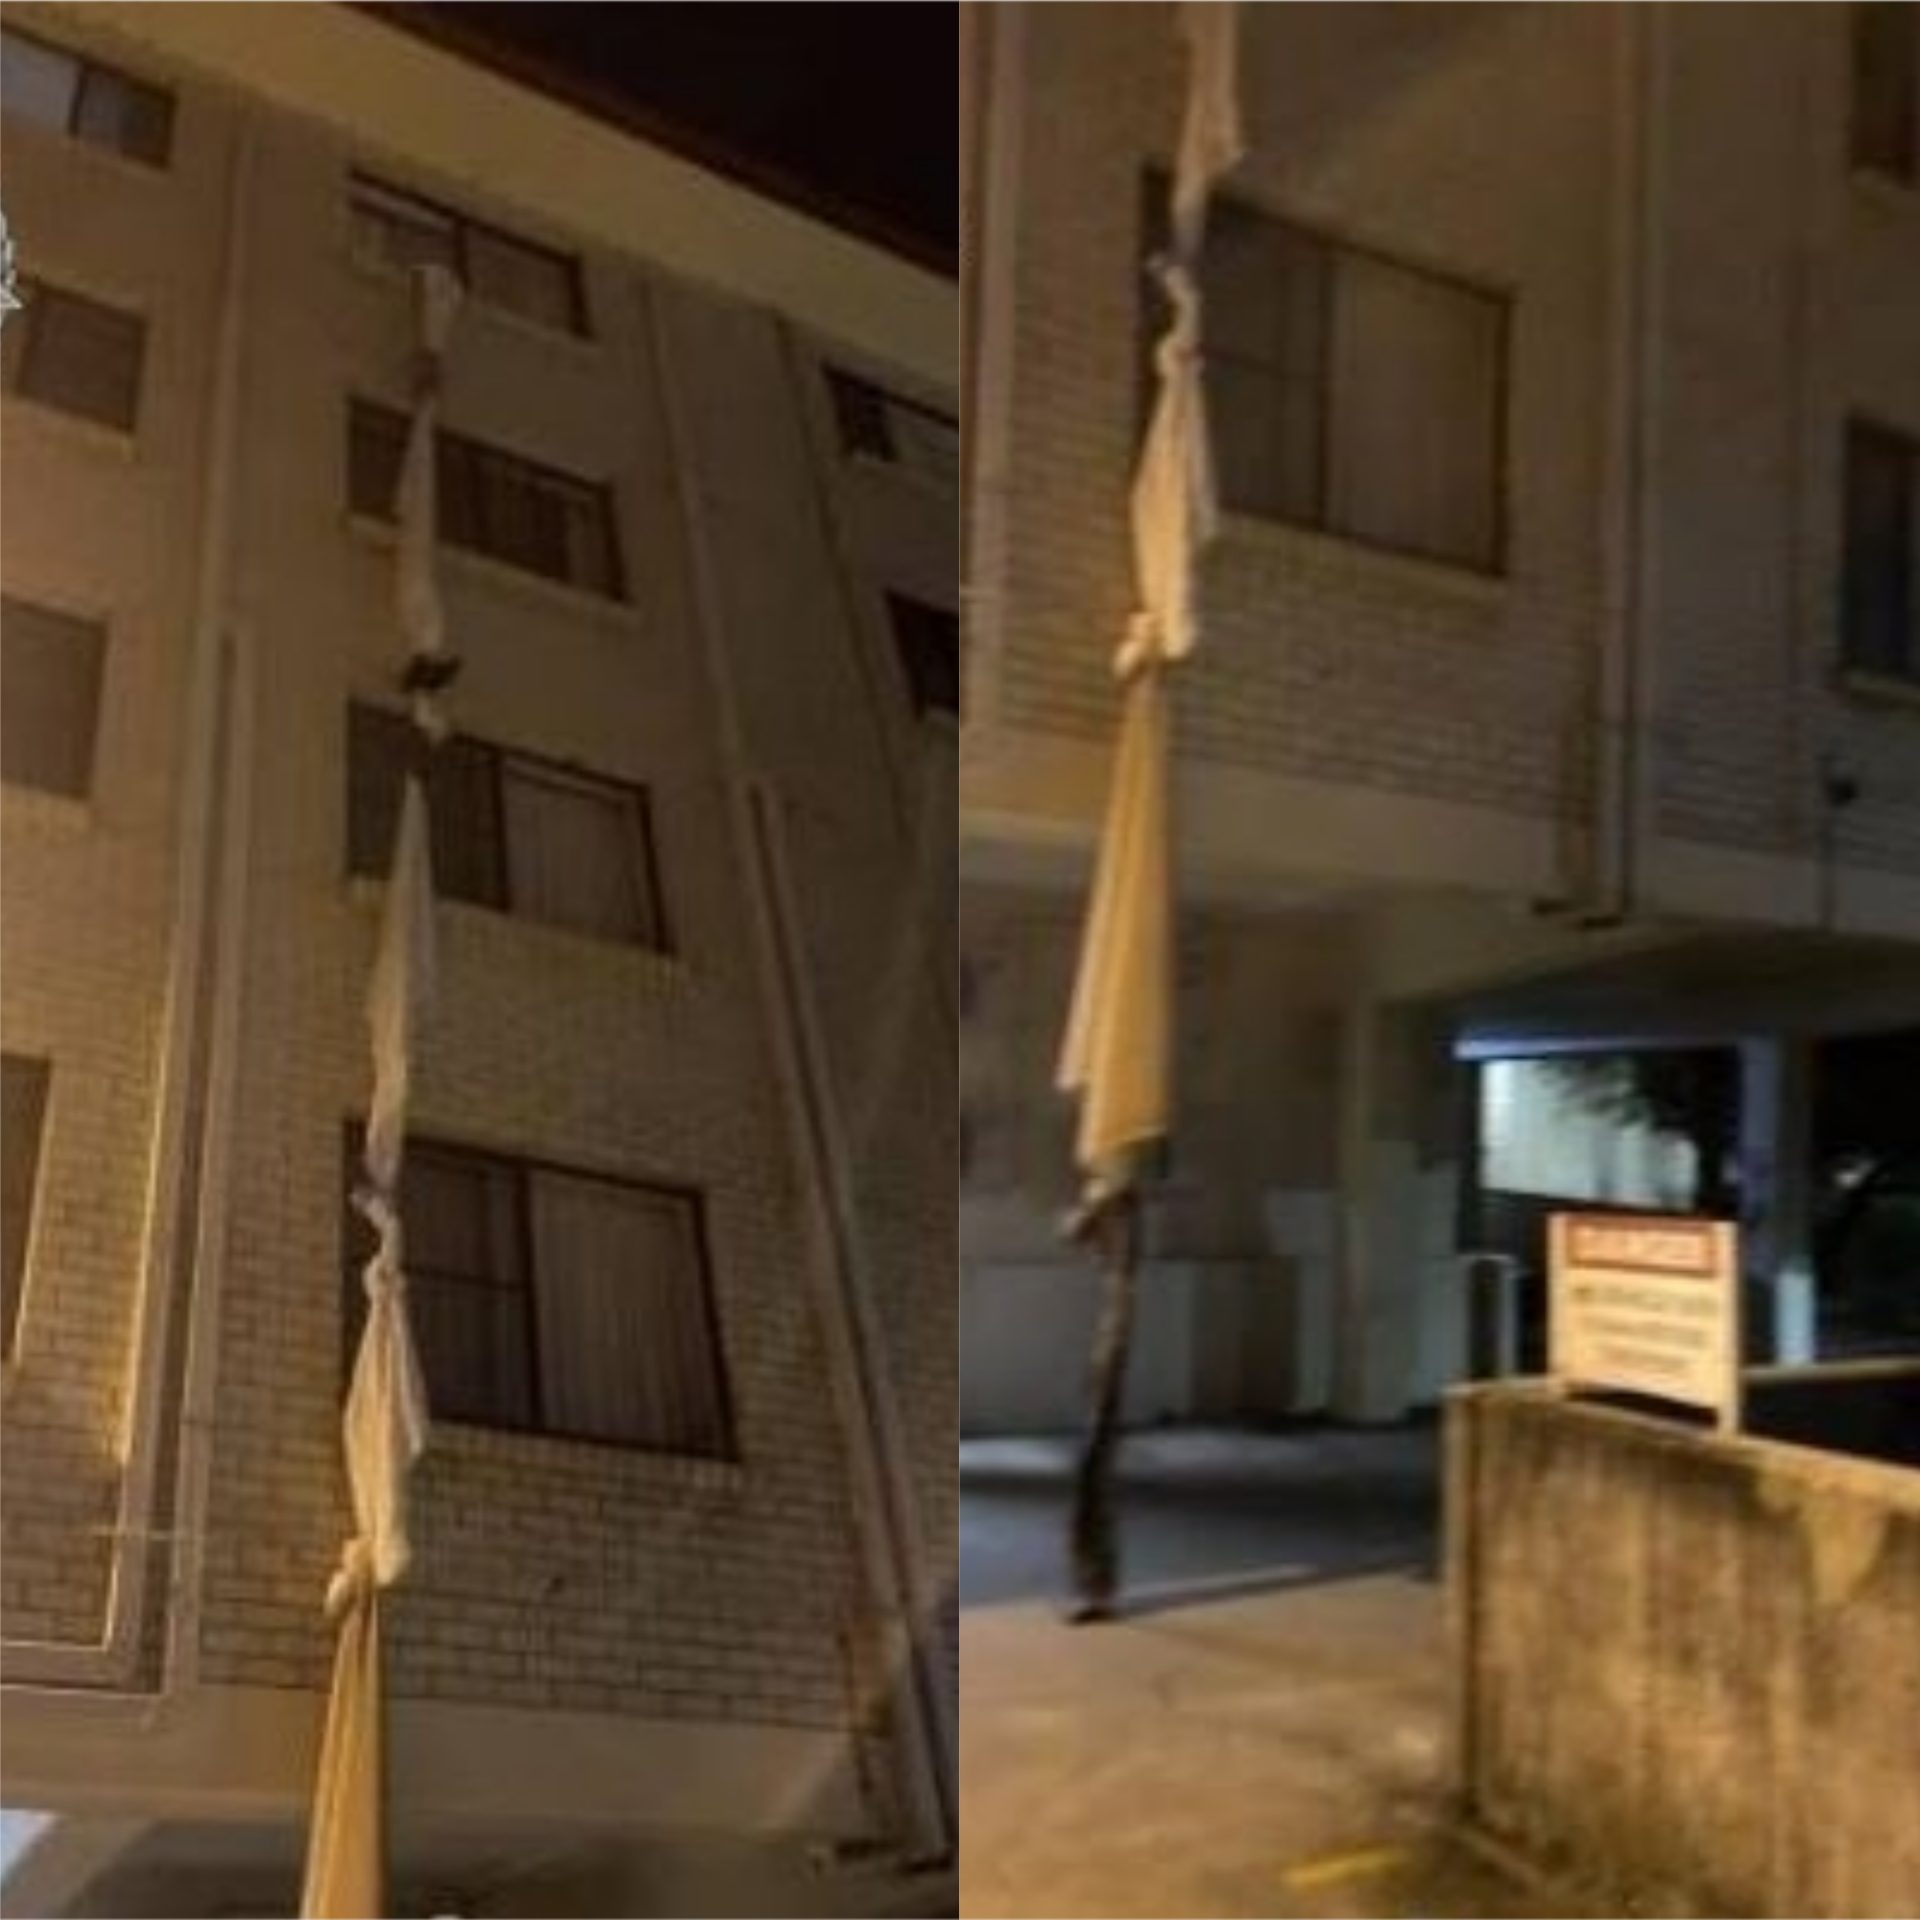 Austrália. Homem utiliza corda de lençóis para fugir de hotel de quarentena